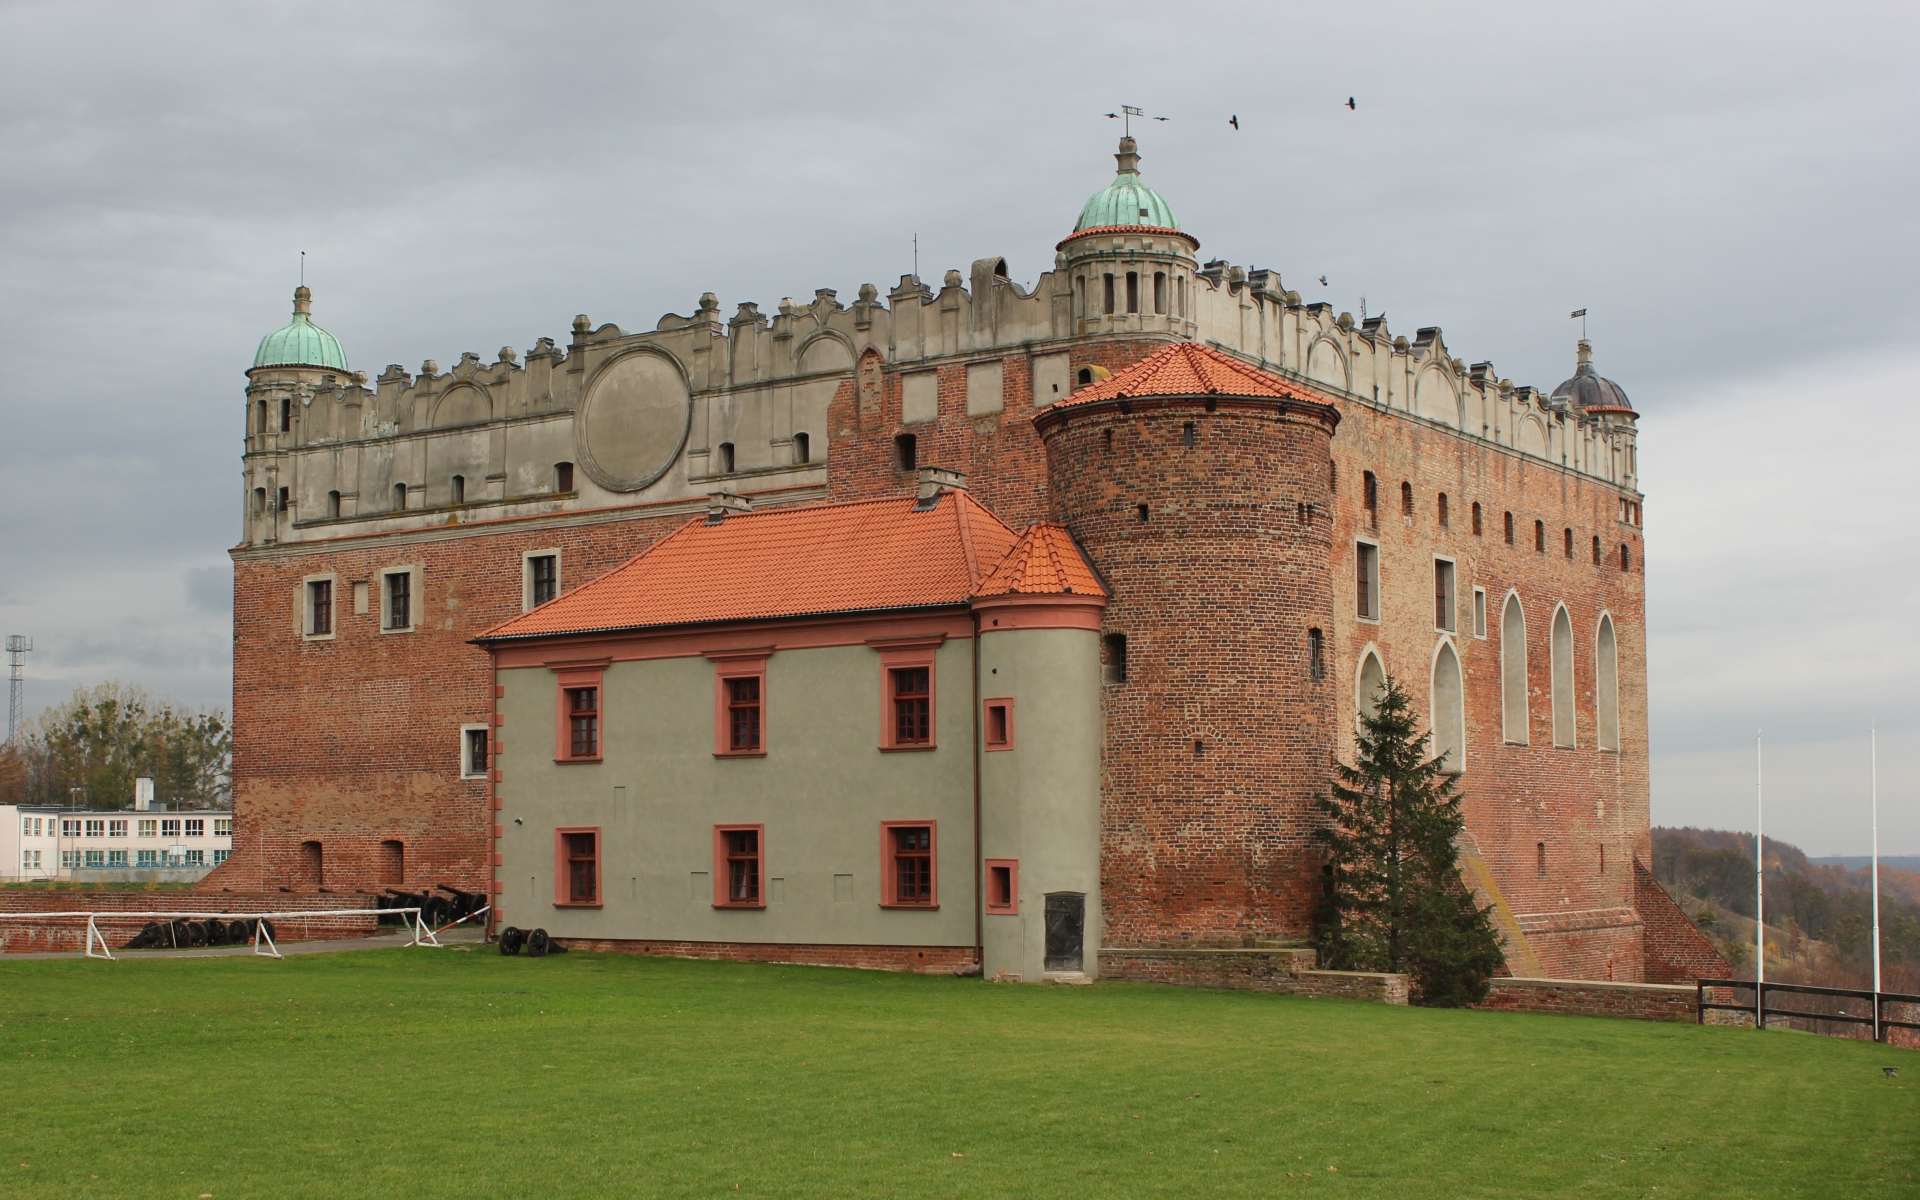 Télécharger des fonds d'écran Château De Golub Dobrzyn HD